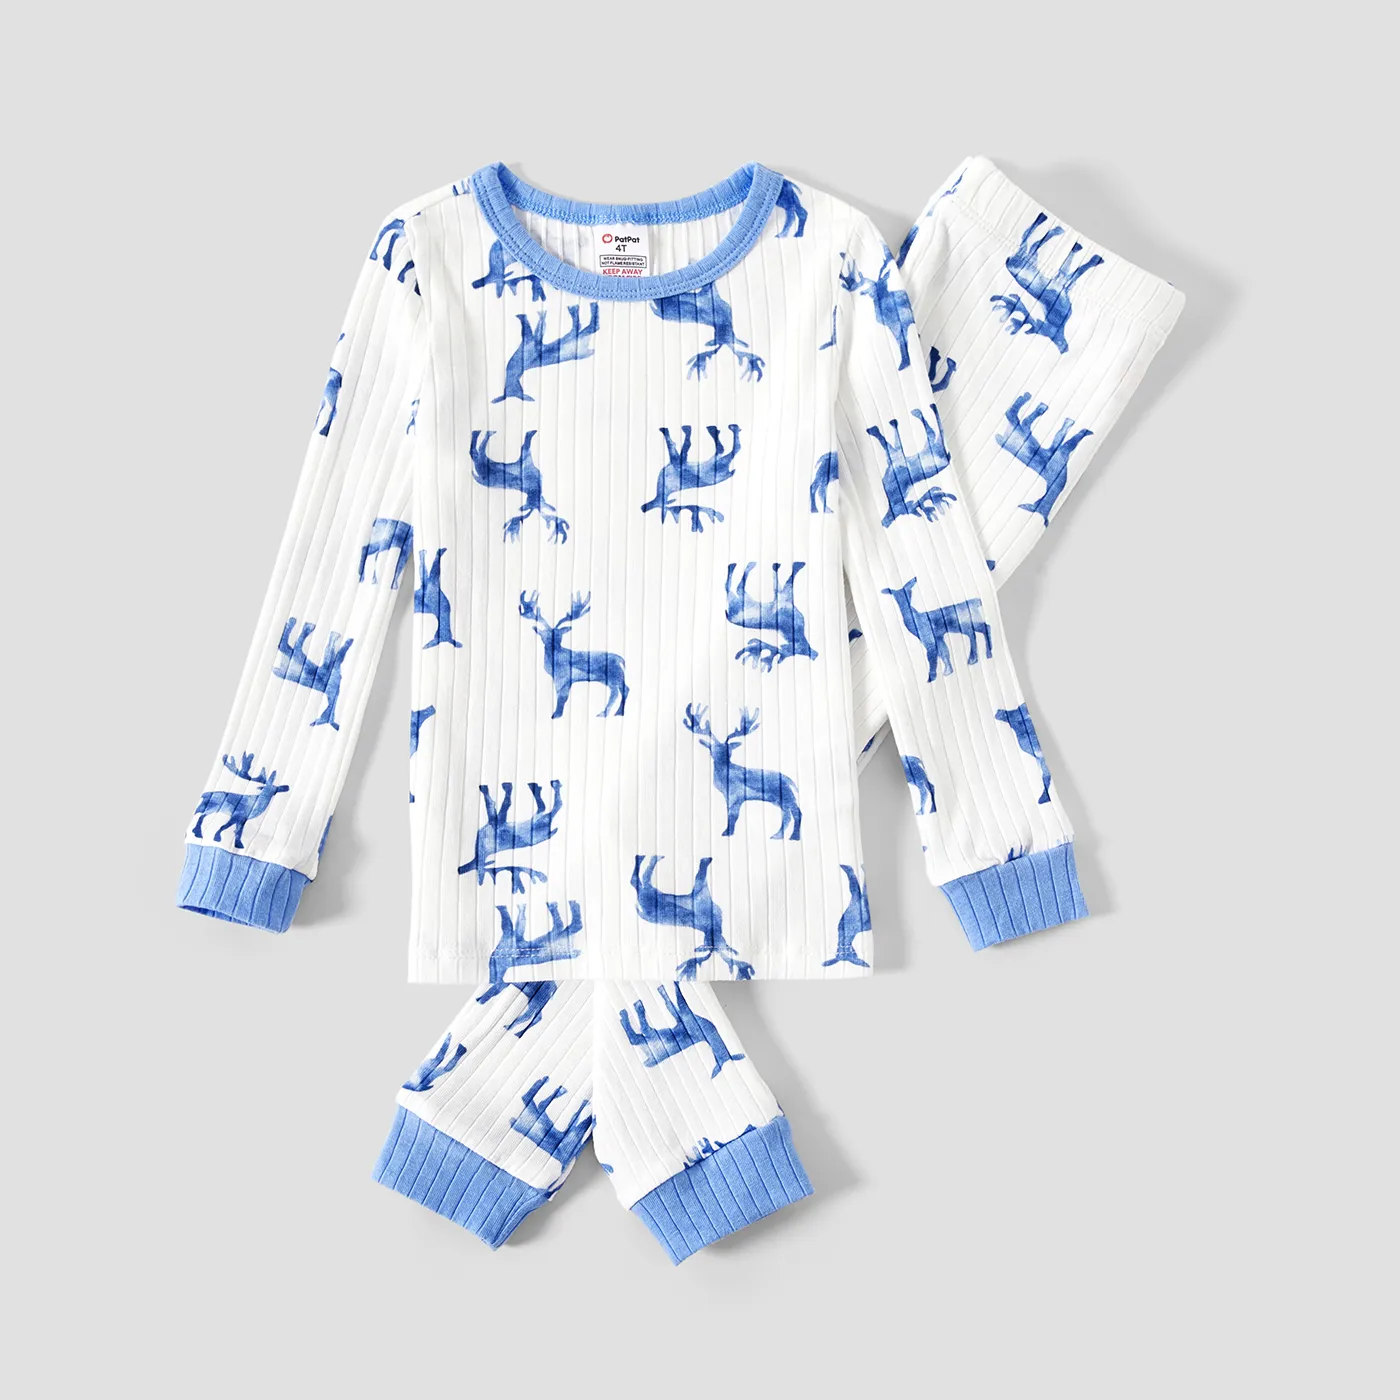 Christmas Matching Deer Print Family Snug- Fitting Pajamas Sets